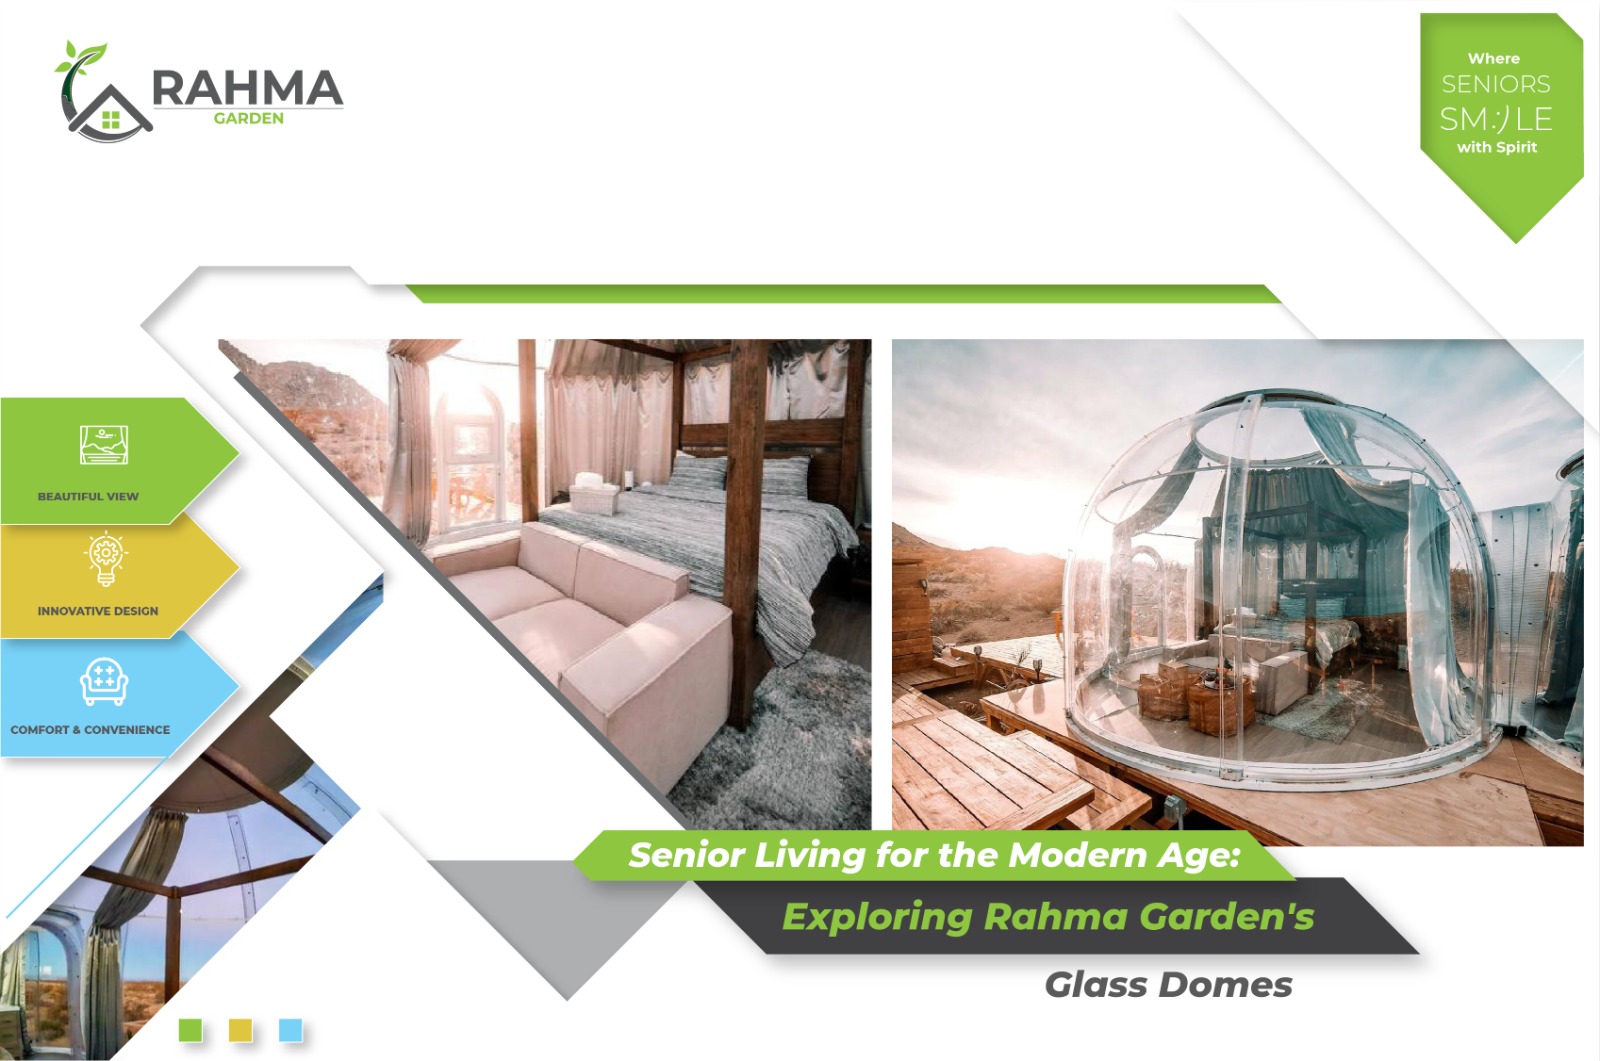 Senior Living for the Modern Age: Exploring Rahma Garden's Glass Domes